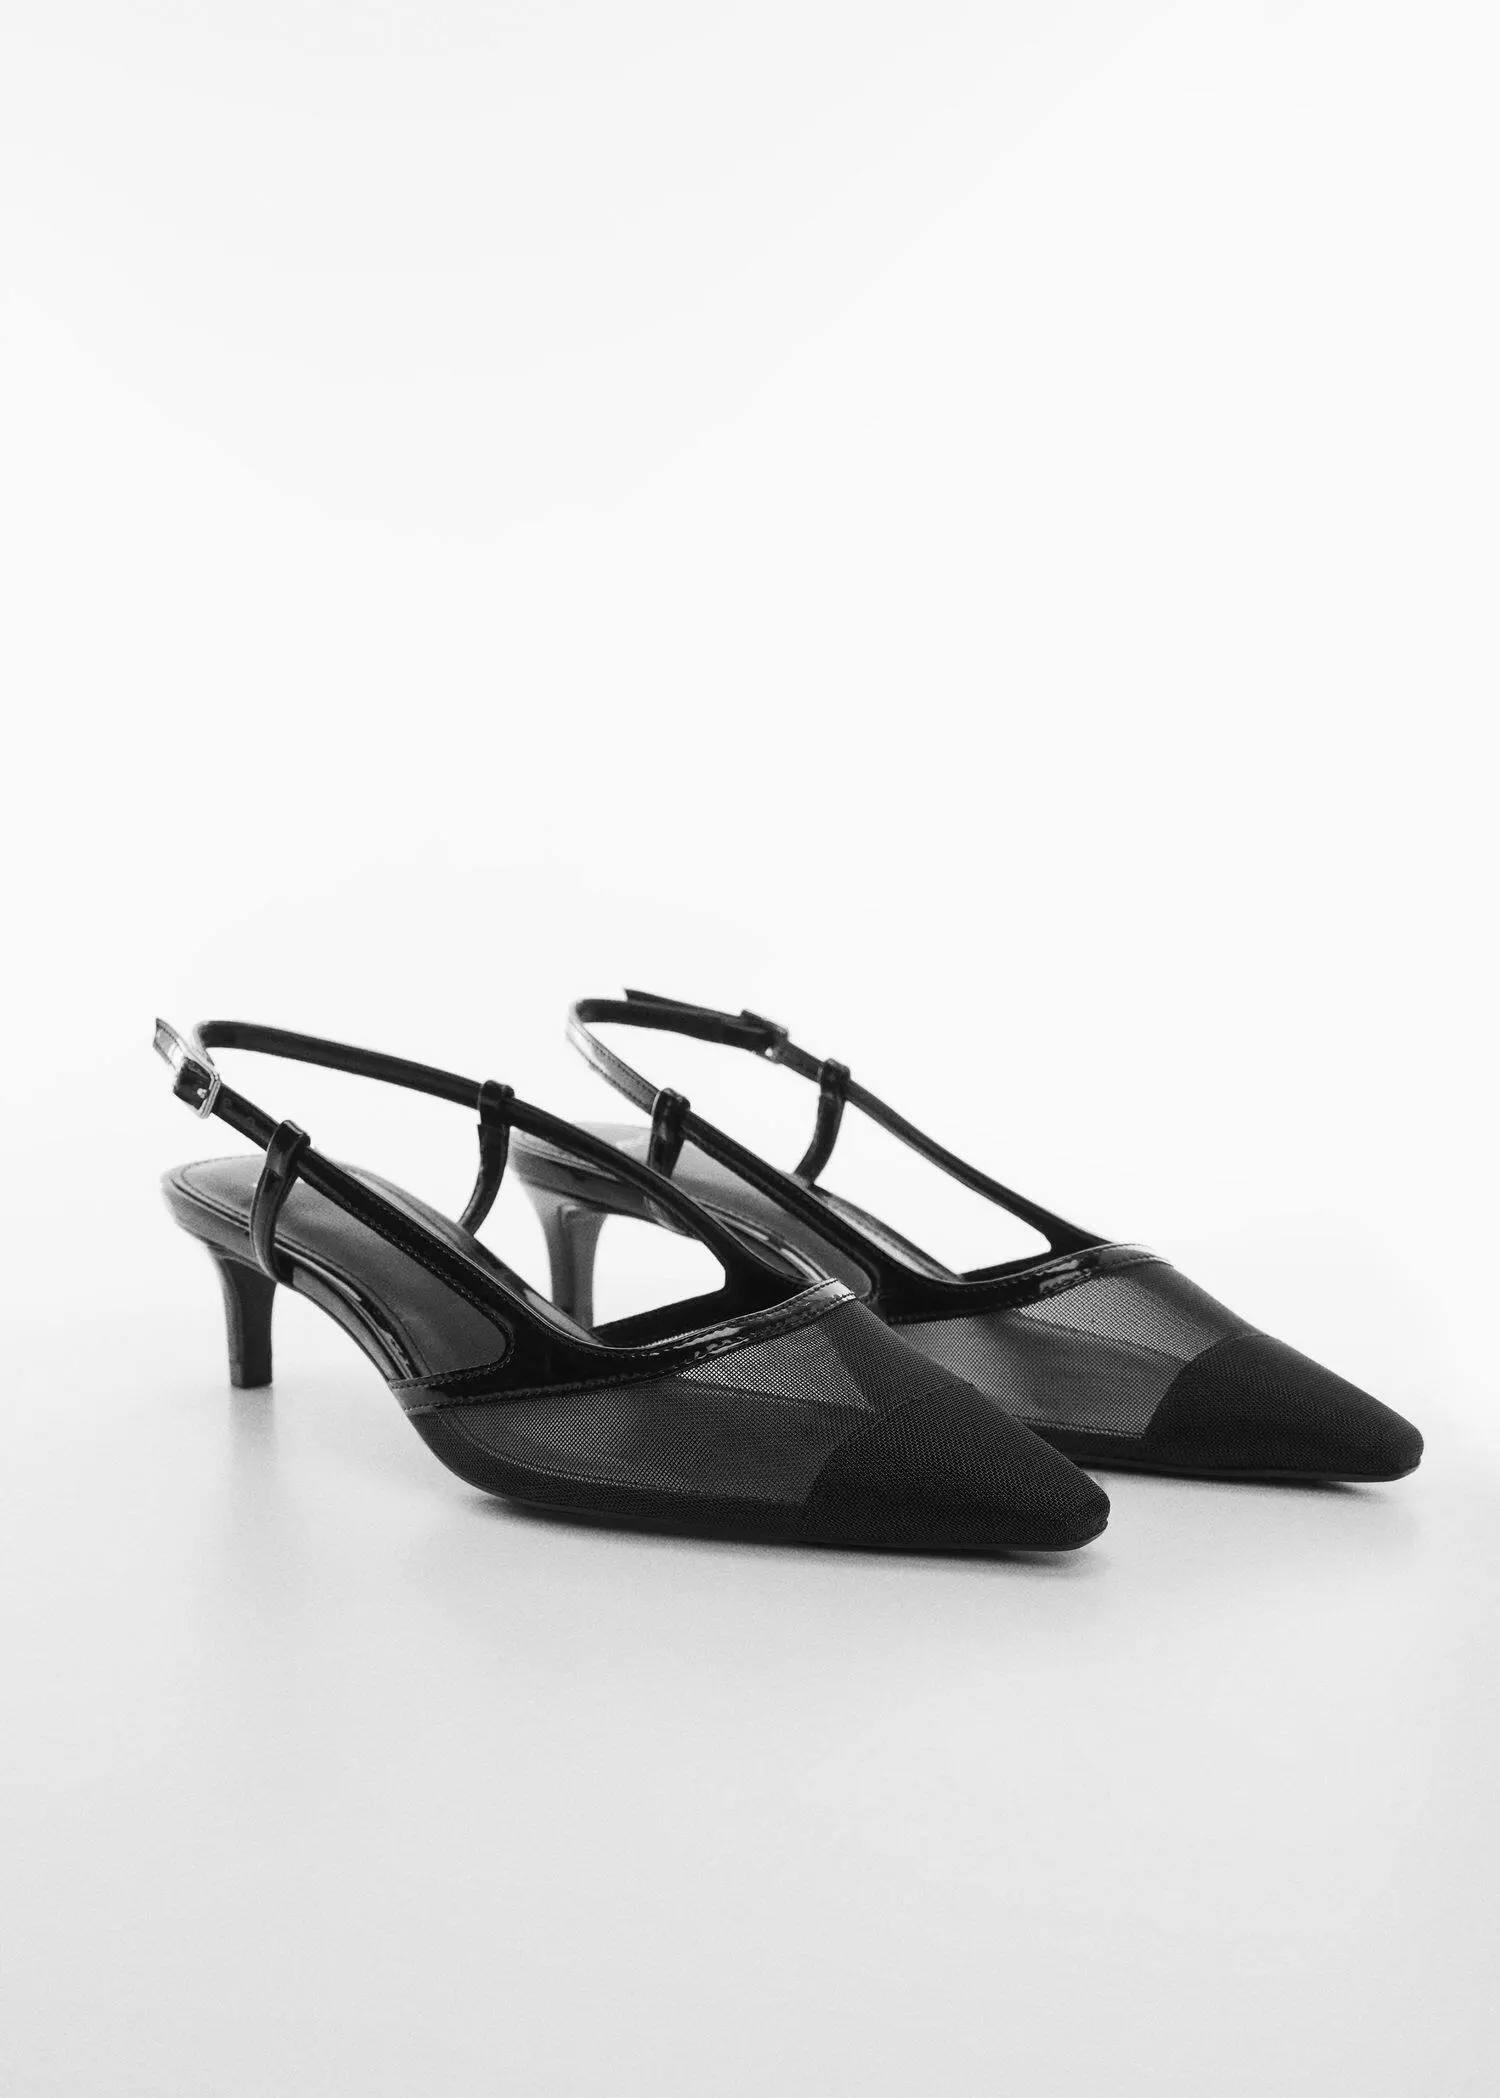 Mango Fersenfreier Schuh mit Netz-Design. 3